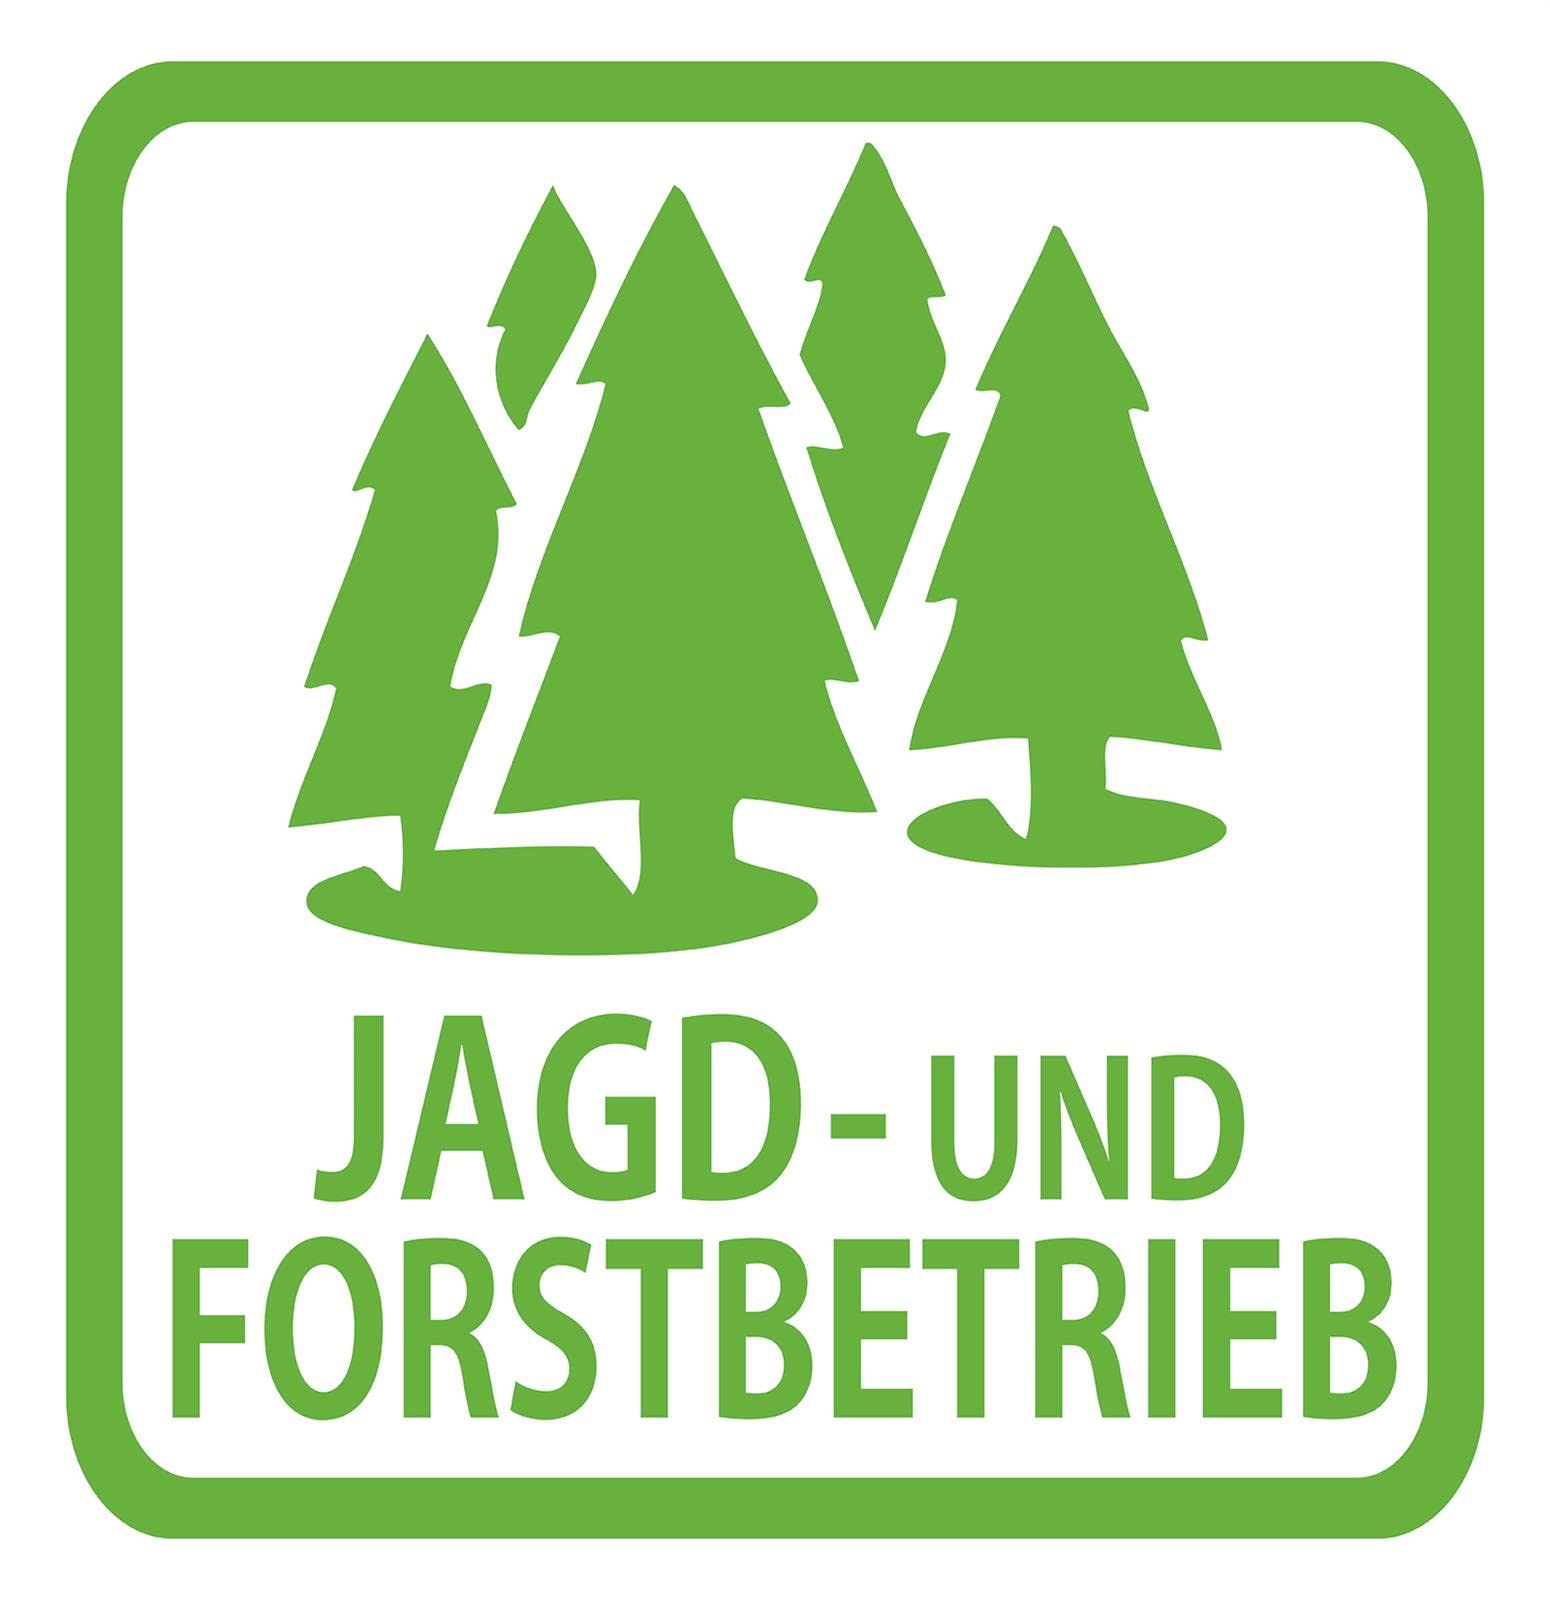 Jagd und Forstbetrieb Sticker Förster Aufkleber Nadelbaum Jäger Schild KFZ von 1A Style Sticker